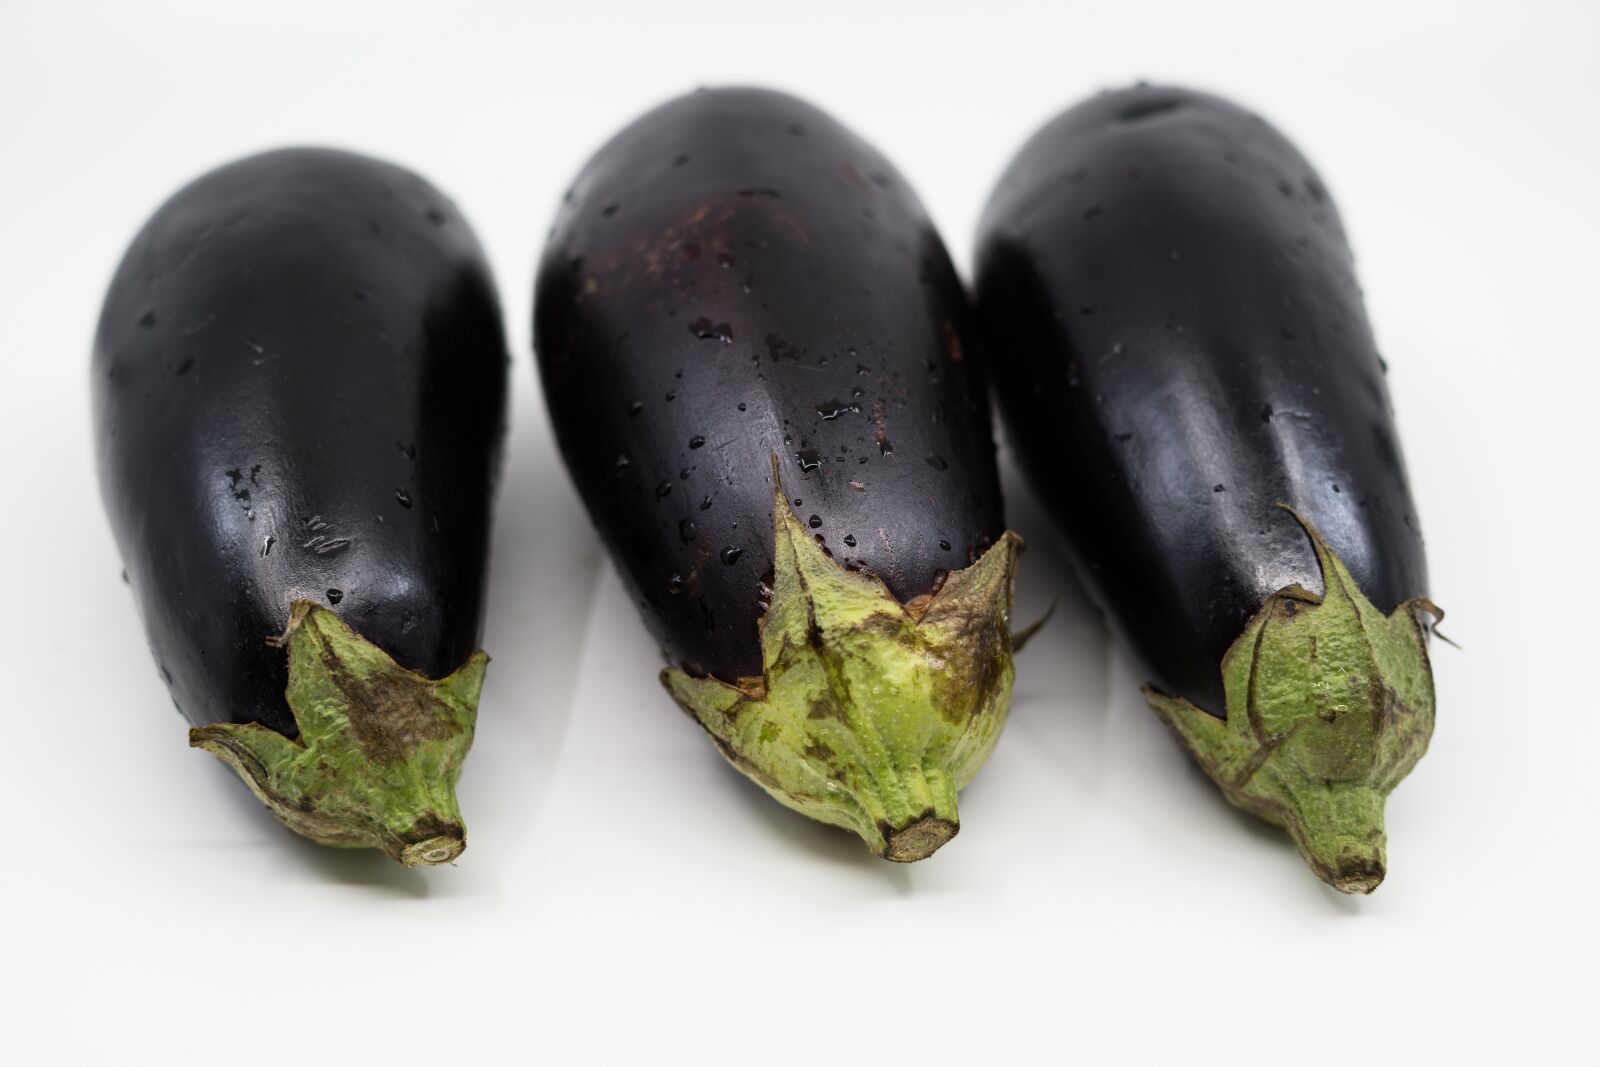 Sony a99 II sample photo. Eggplant, vegetable, fruit photography